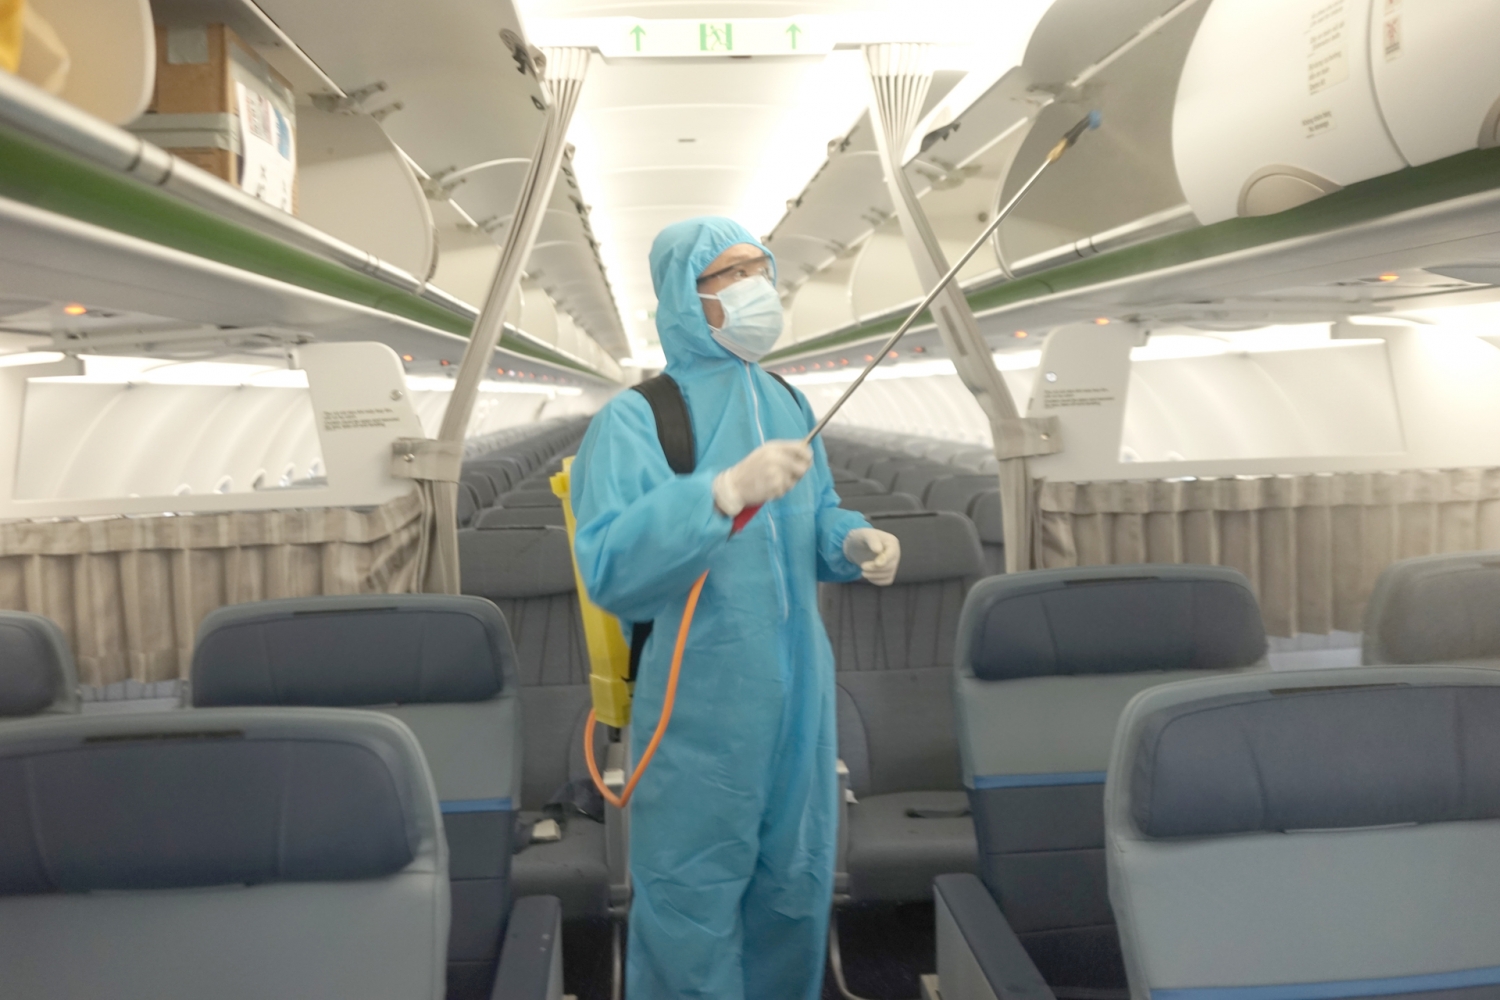 Bamboo Airways mở rộng đội bay giữa dịch bệnh